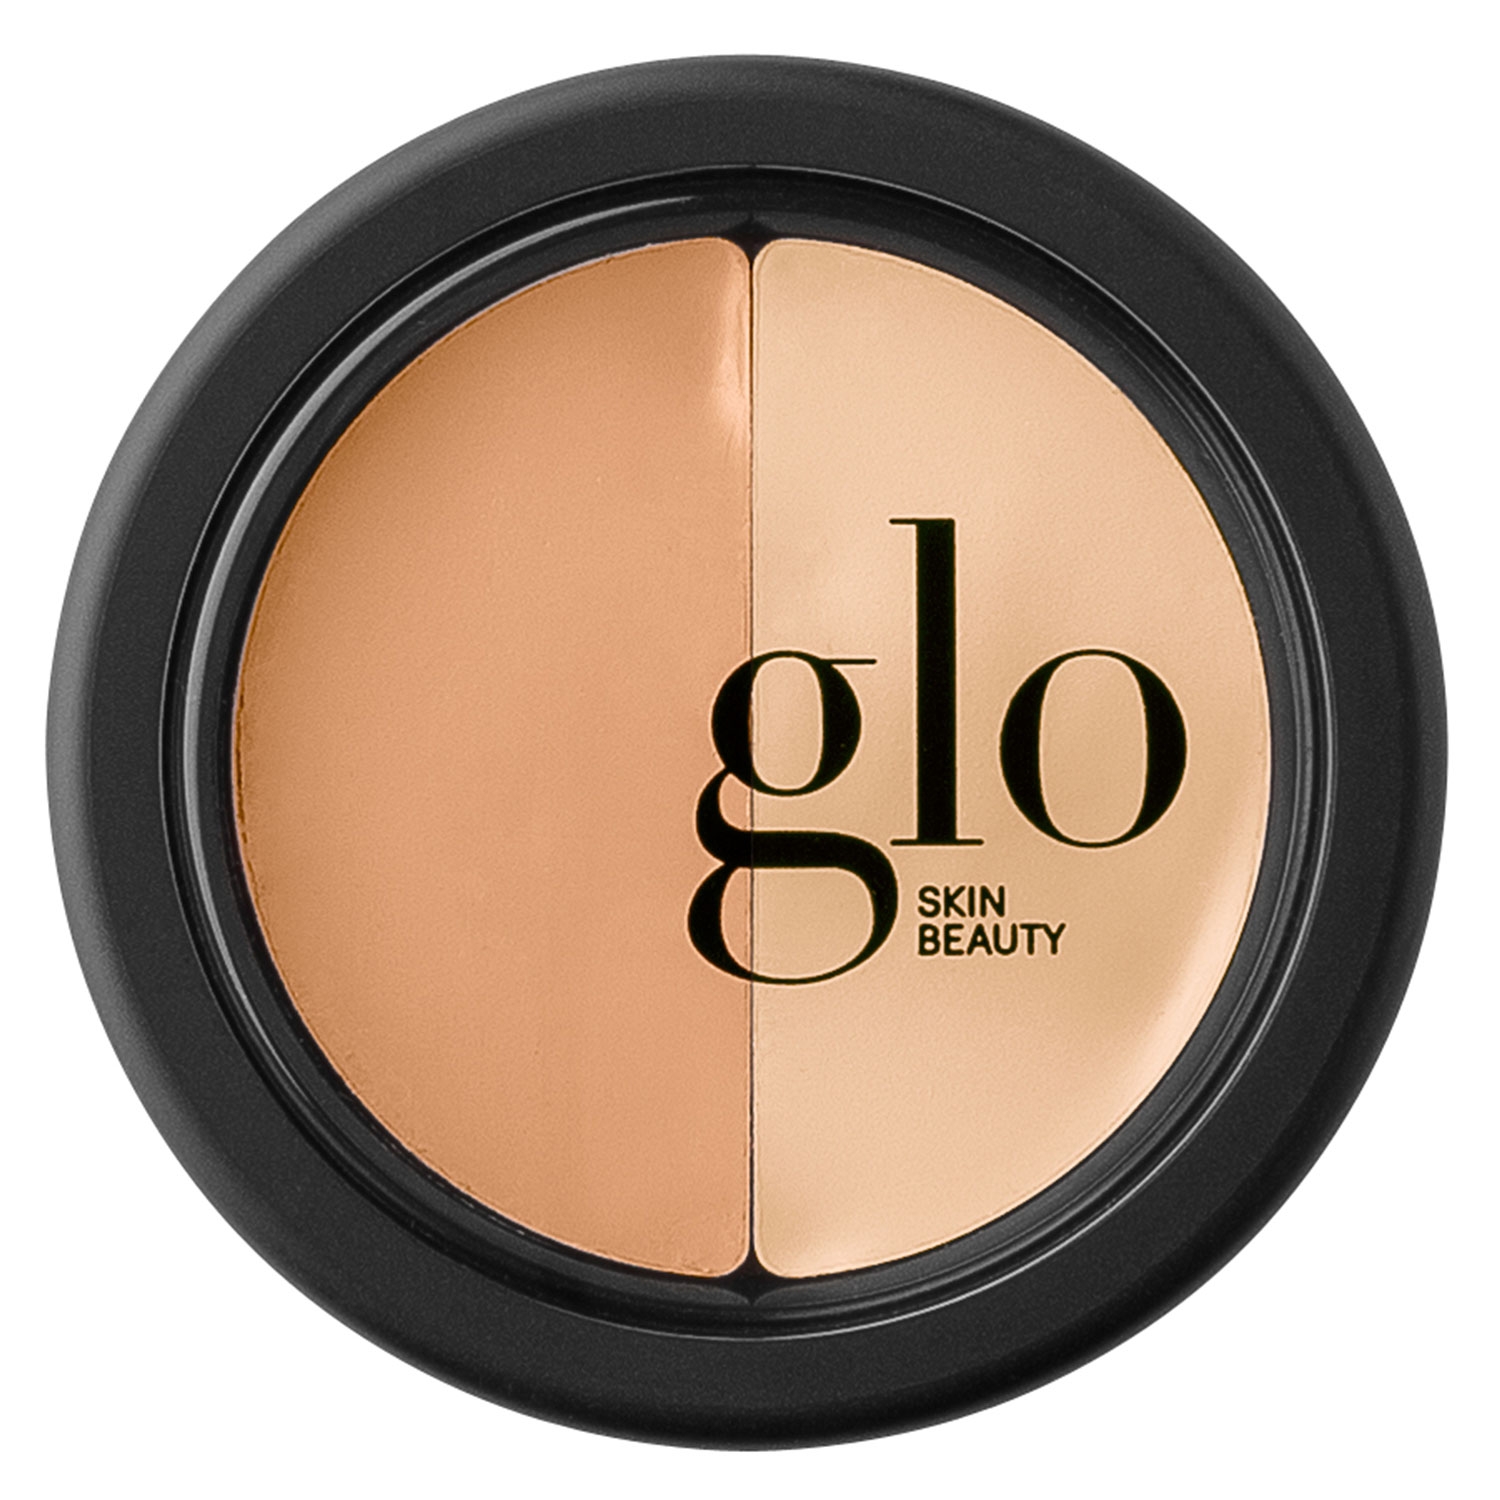 Produktbild von Glo Skin Beauty Concealer - Under Eye Concealer Sand